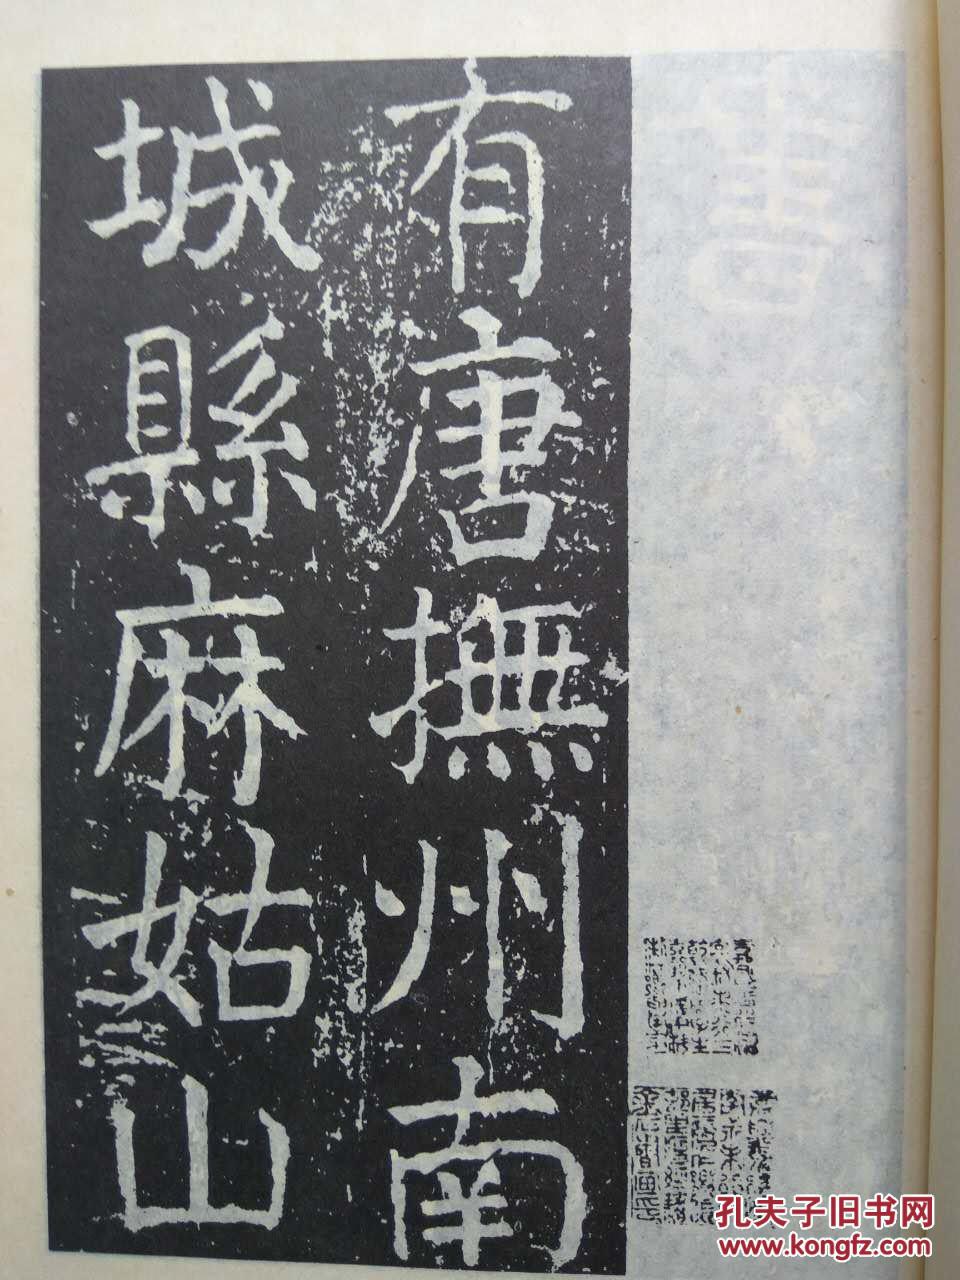 唐颜真卿大字麻姑仙坛记碑 --颜真卿书。武汉古籍书店 影印。1986年。1版1印